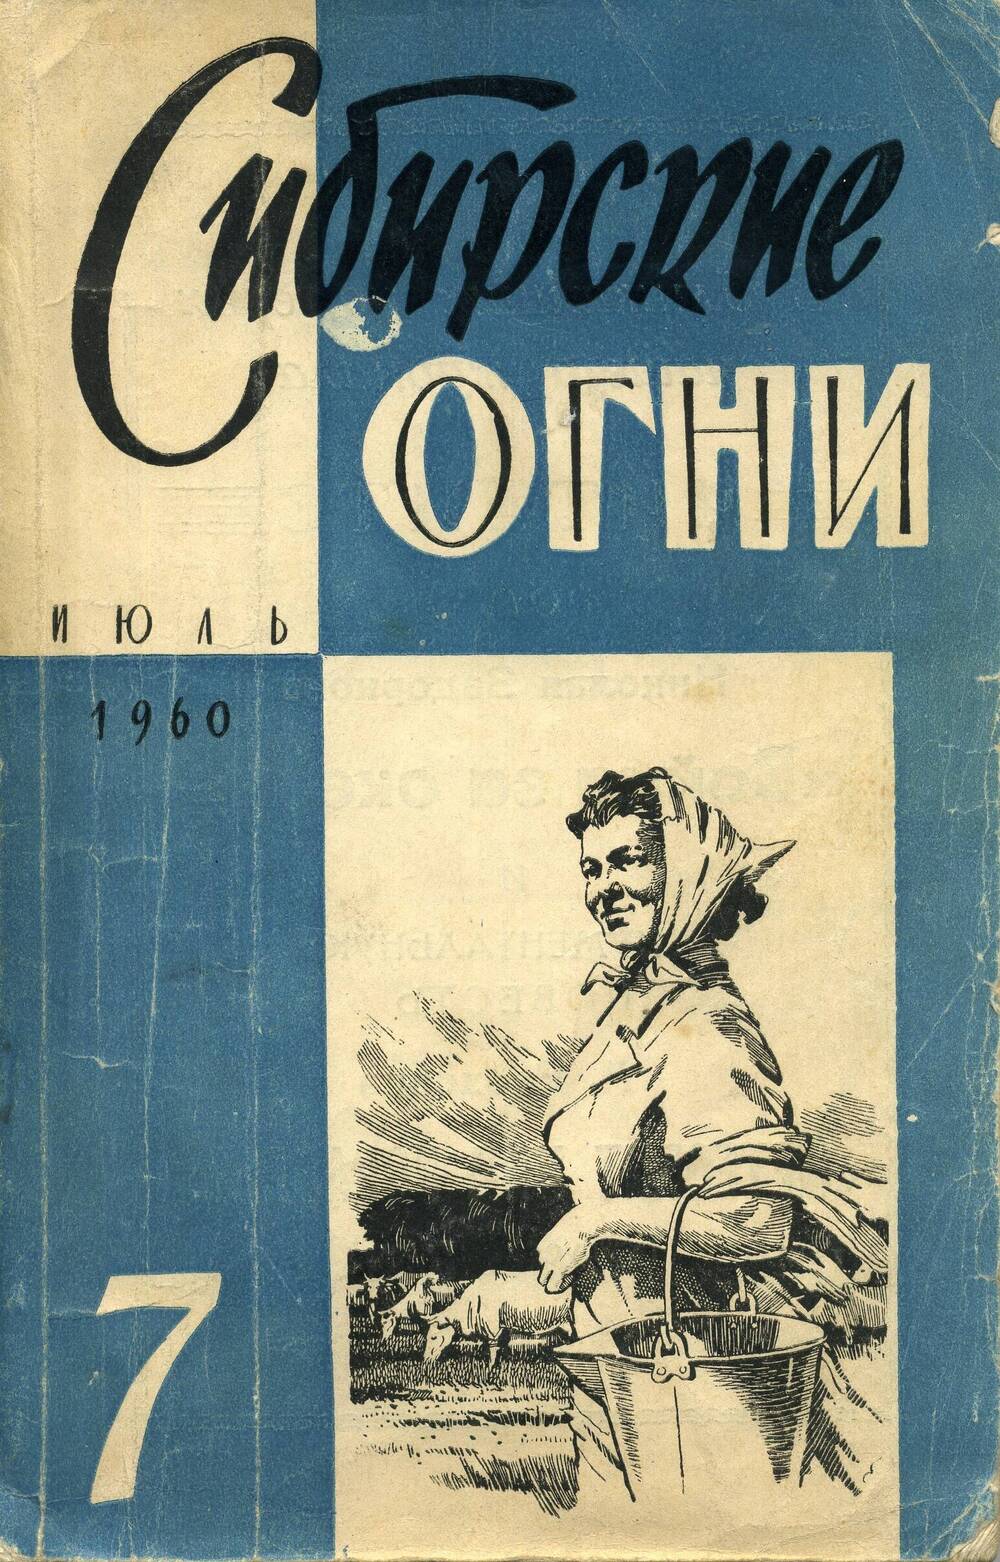 Журнал Сибирские огни № 7, июль 1960.